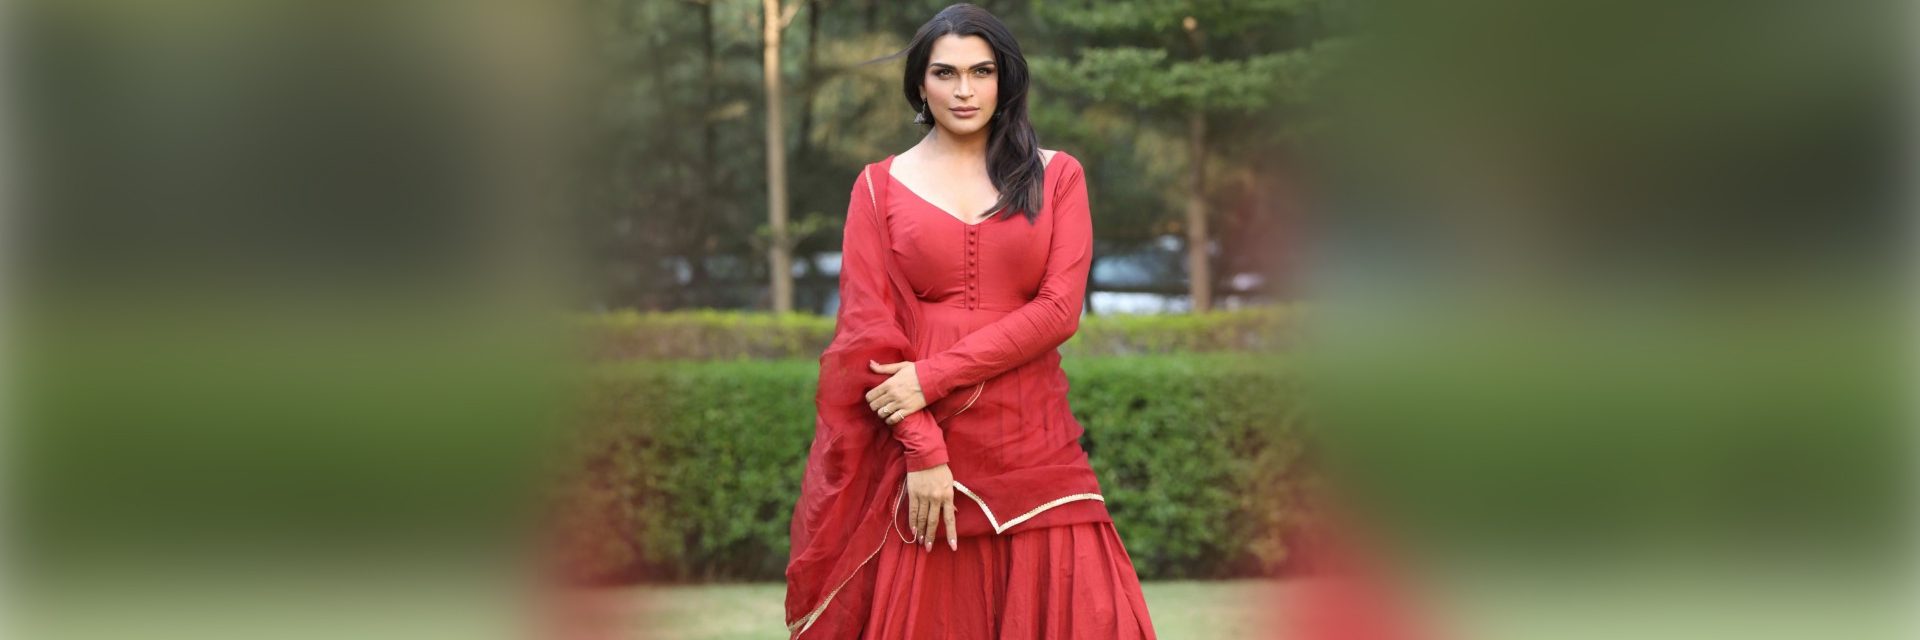 Cách nhà thiết kế thời trang Ấn Độ Saisha Shinde chụp cánh tay cho những người chuyển giới, và Hoa hậu Hoàn vũ Harnaaz trông cô ấy